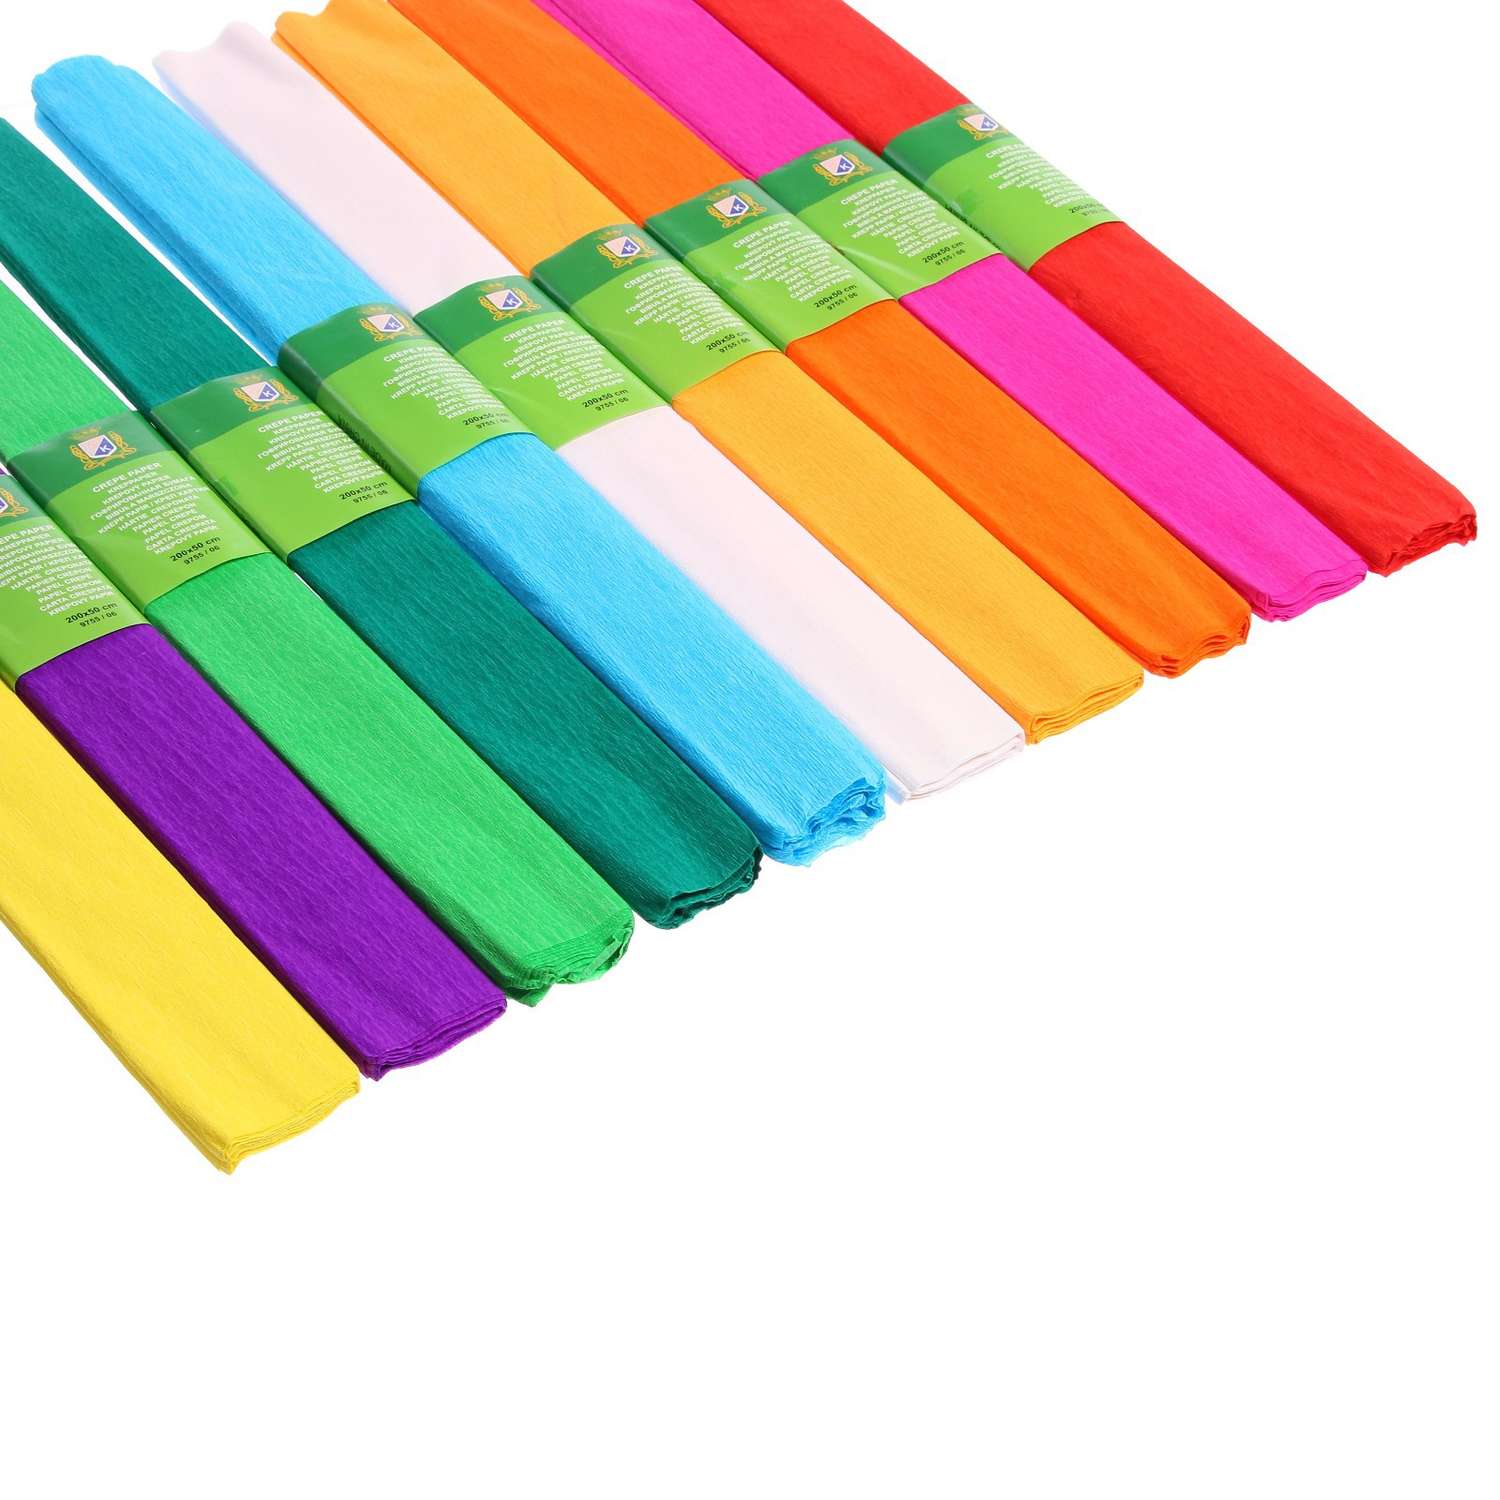 Набор цветного фетра Calligrata бумаги крепированной в рулоне 10 штук/10 цветов 50 х 200 см 30 г/м2 - фото 2